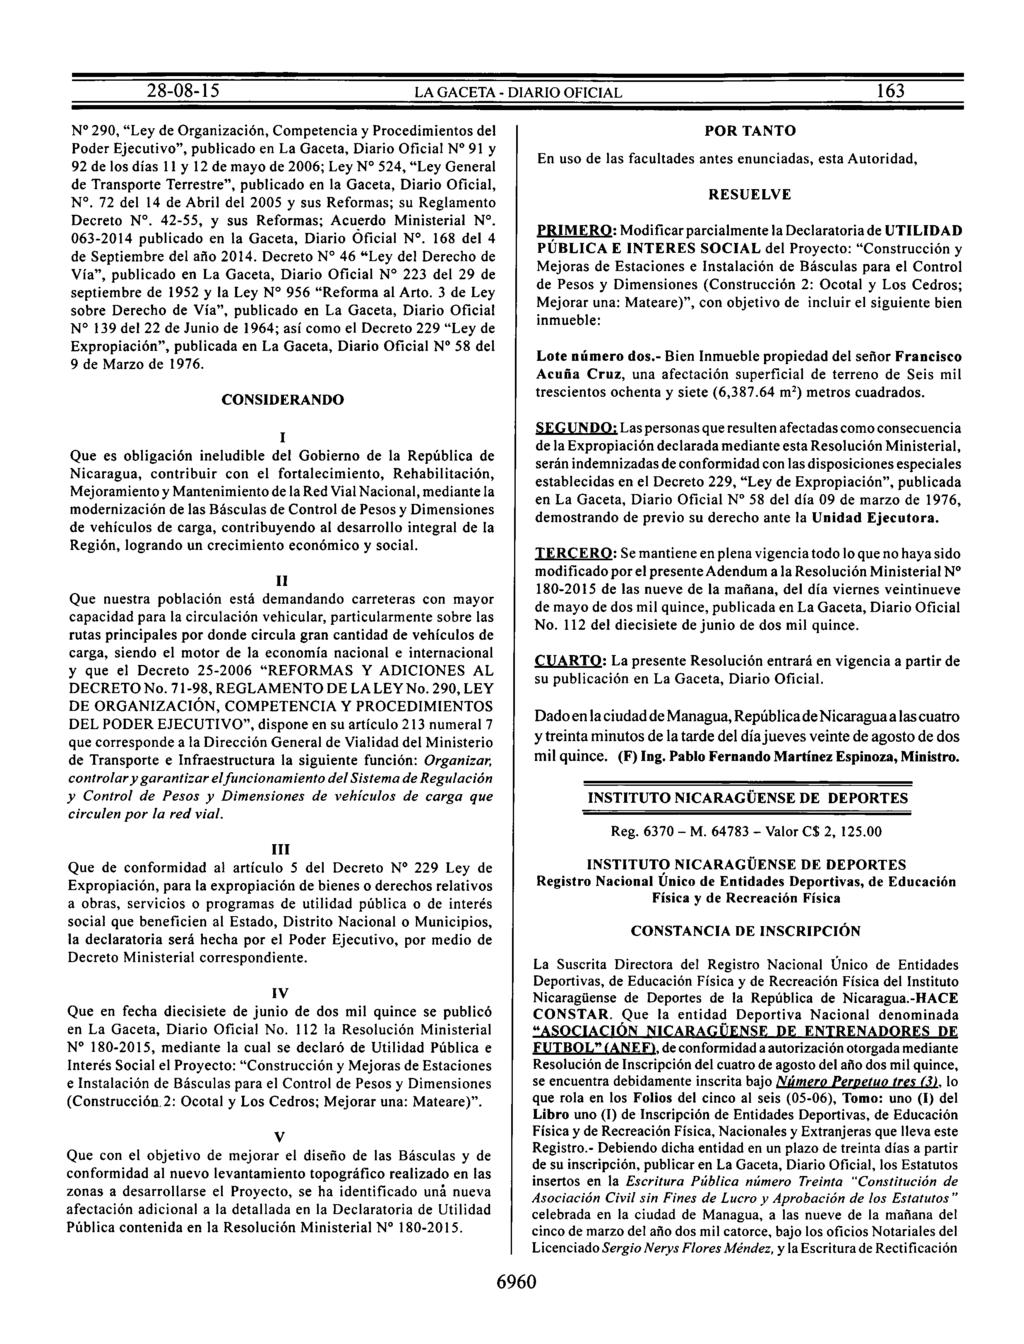 Nº 290, "Ley de Organización, Competencia y Procedimientos del Poder Ejecutivo", publicado en La Gaceta, Diario Oficial Nº 91 y 92 de los días 11y12 de mayo de 2006; Ley Nº 524, "Ley General de